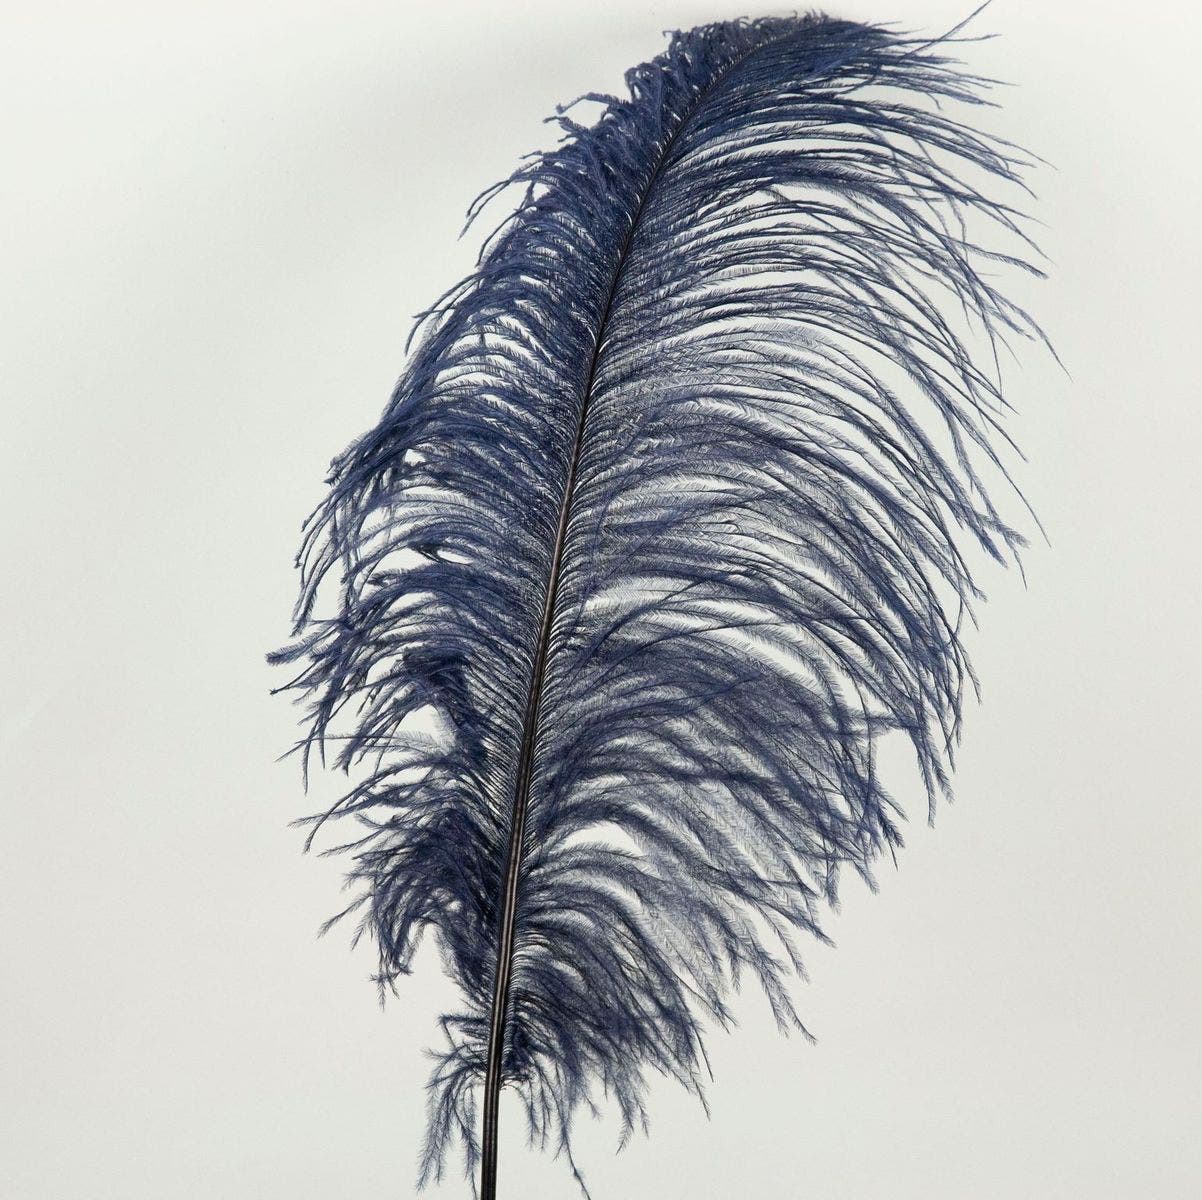 Bulk Ostrich Feathers-Damaged Femina - Dark Turquoise